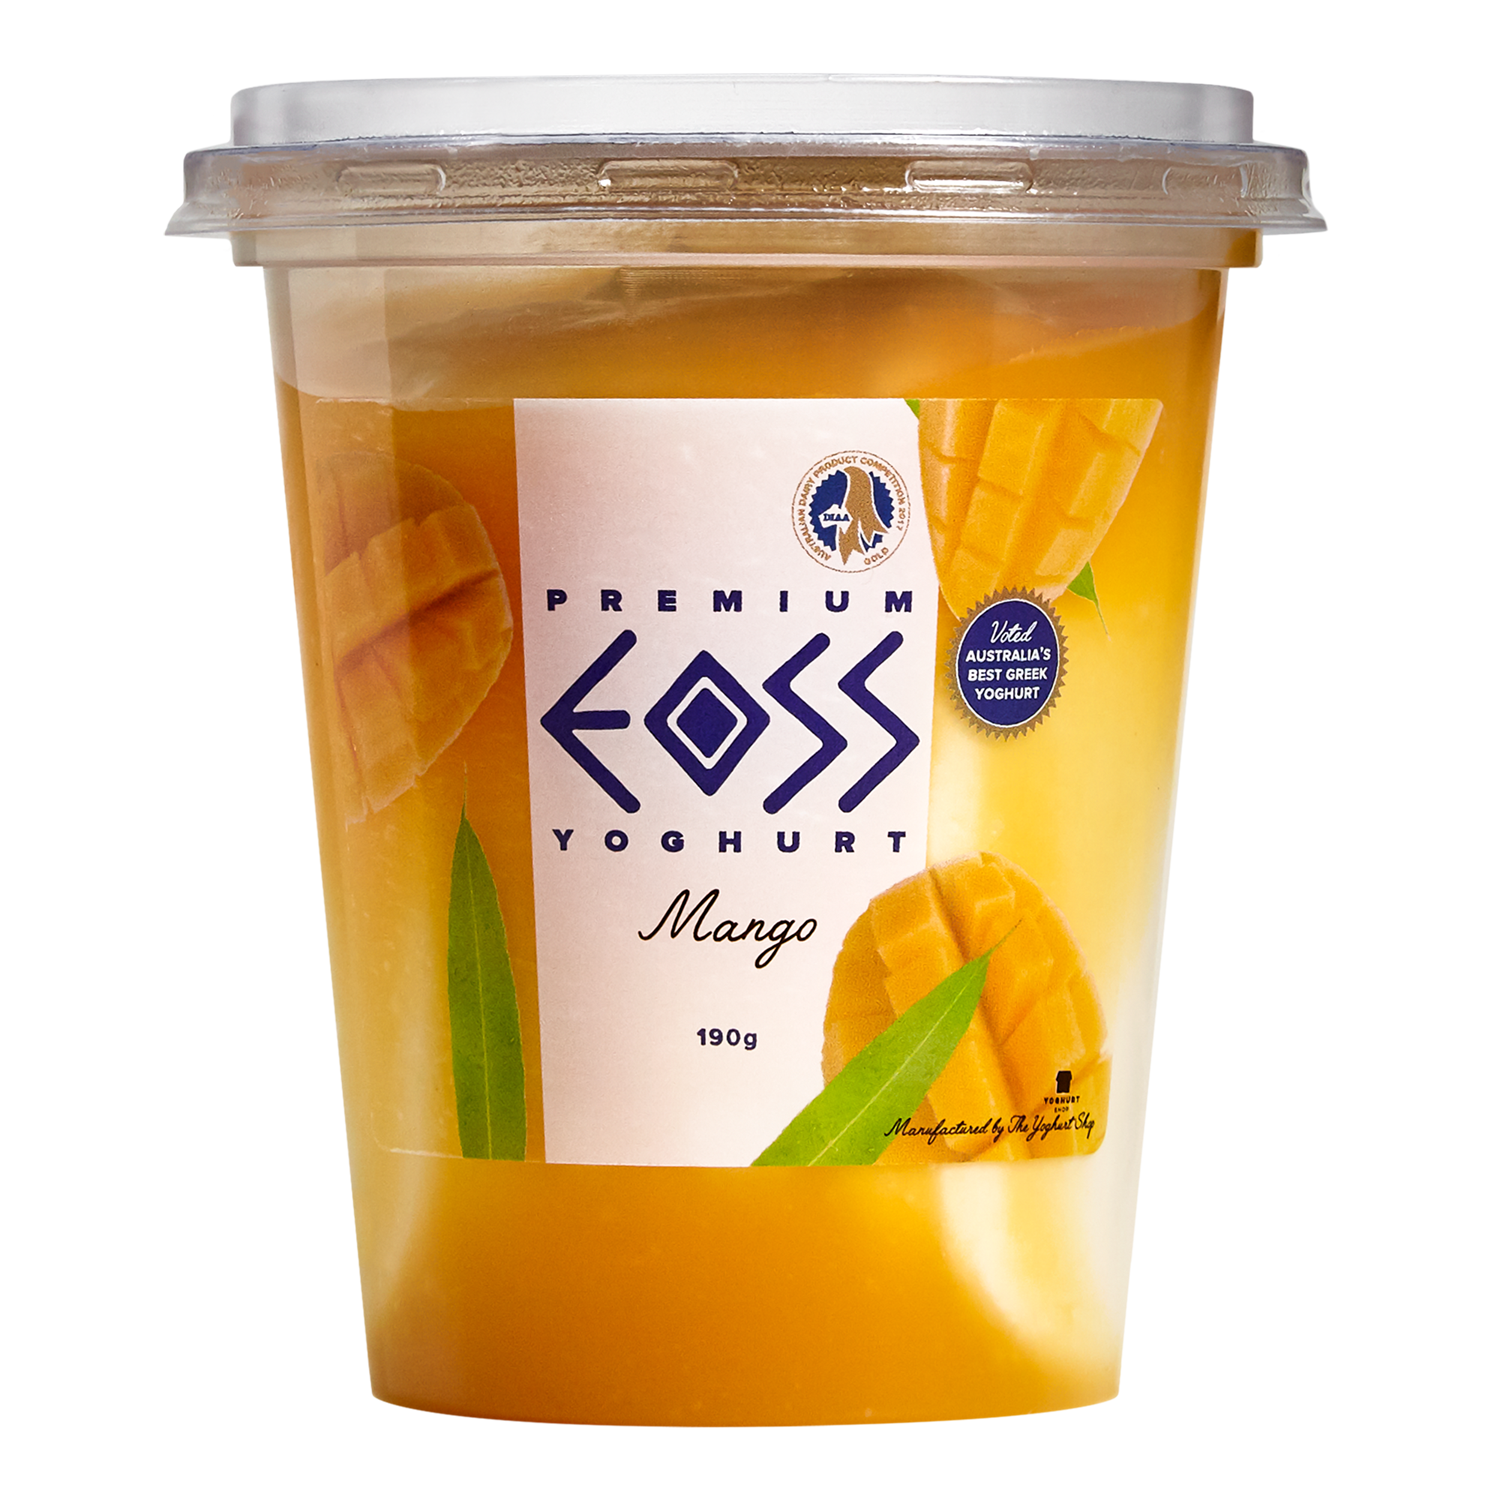 EOSS Yoghurt Mango Cup 190g